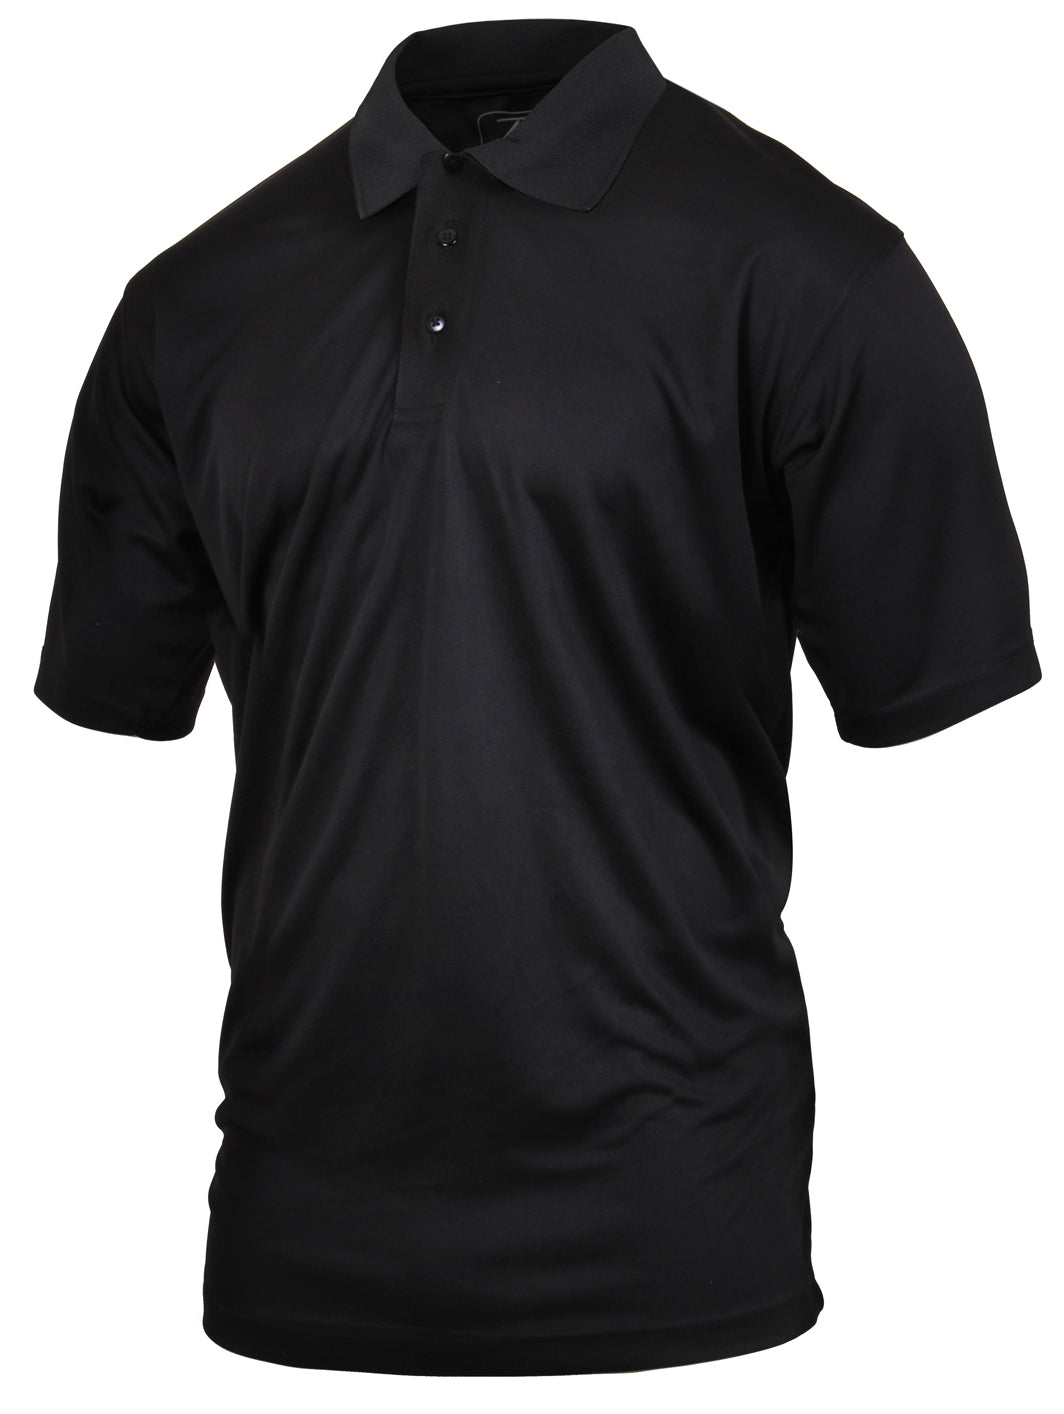 Men's Black 3-Button Short Sleeve Golf Polo - Rothco Moisture Wicking Polo Shirt